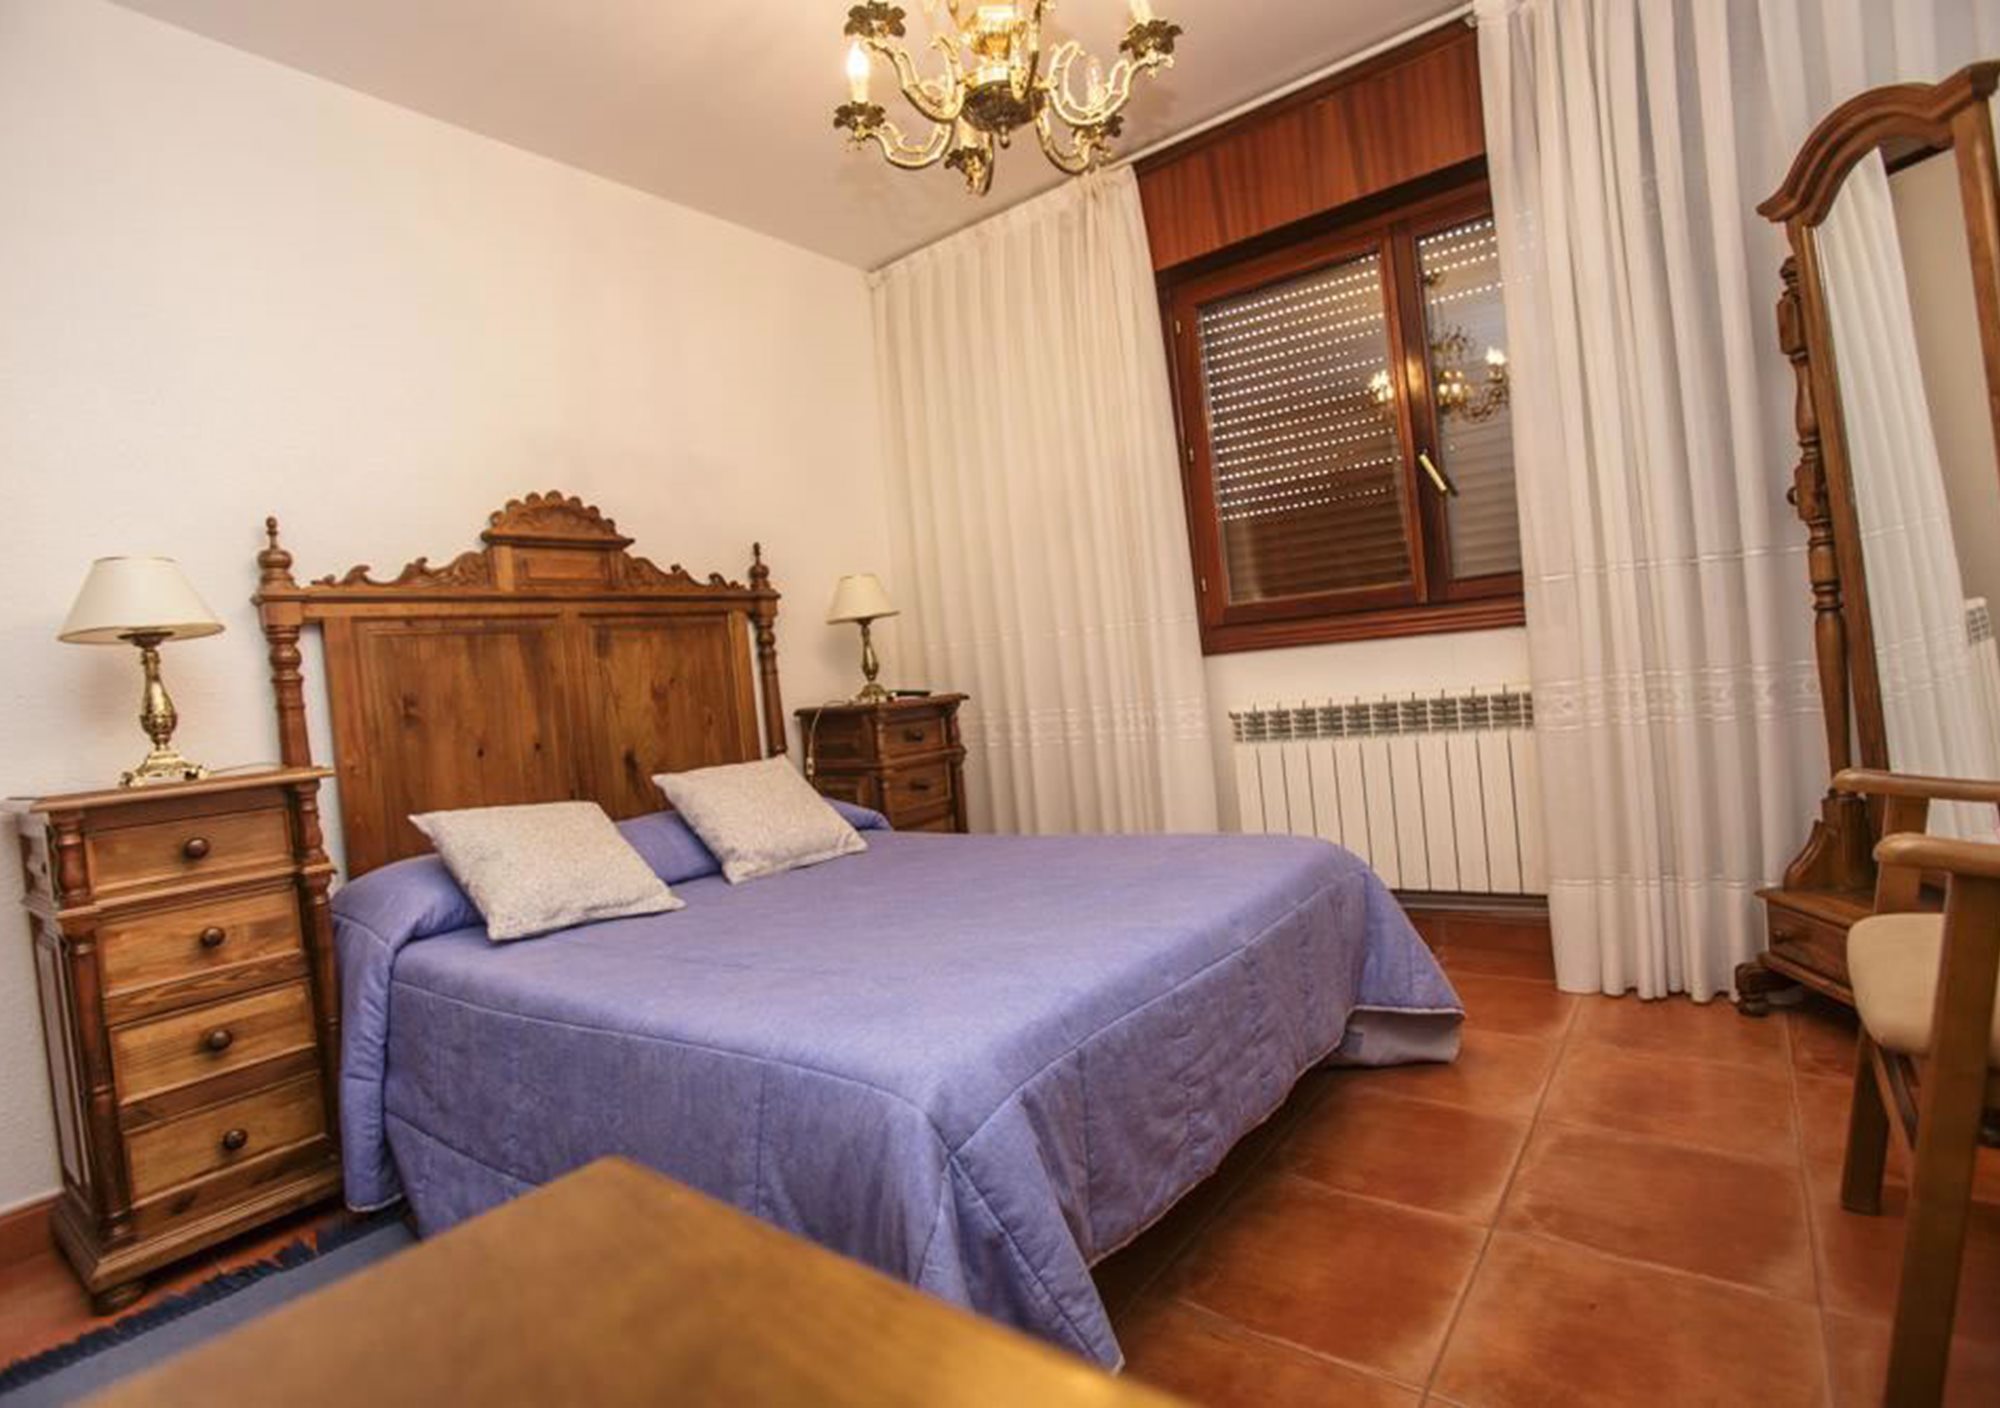 Escapadas a La Rioja ofertas especial fin de semana finde casa hotel hostal alojamiento rural